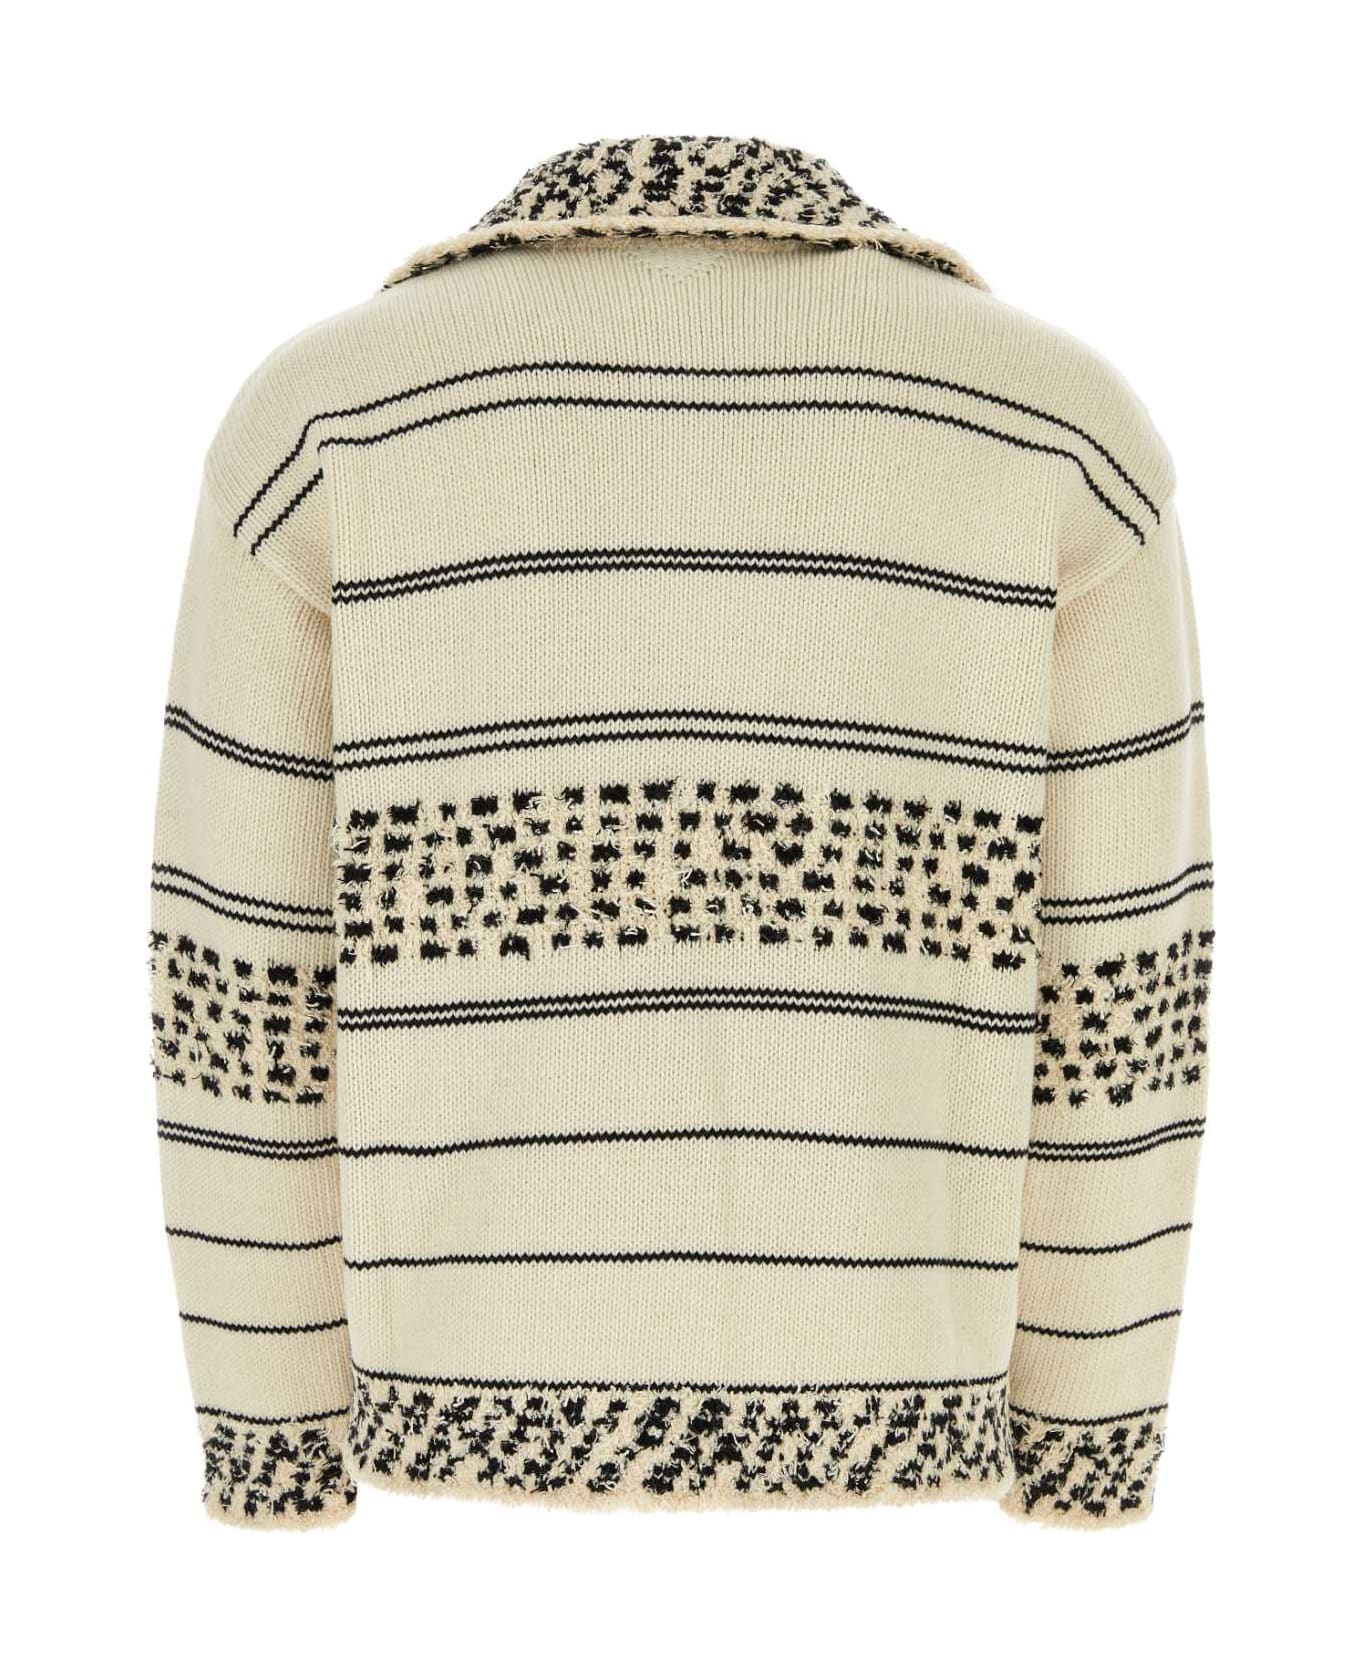 Bottega Veneta Embroidered Wool Blend Sweater - MULTICOSEASALT